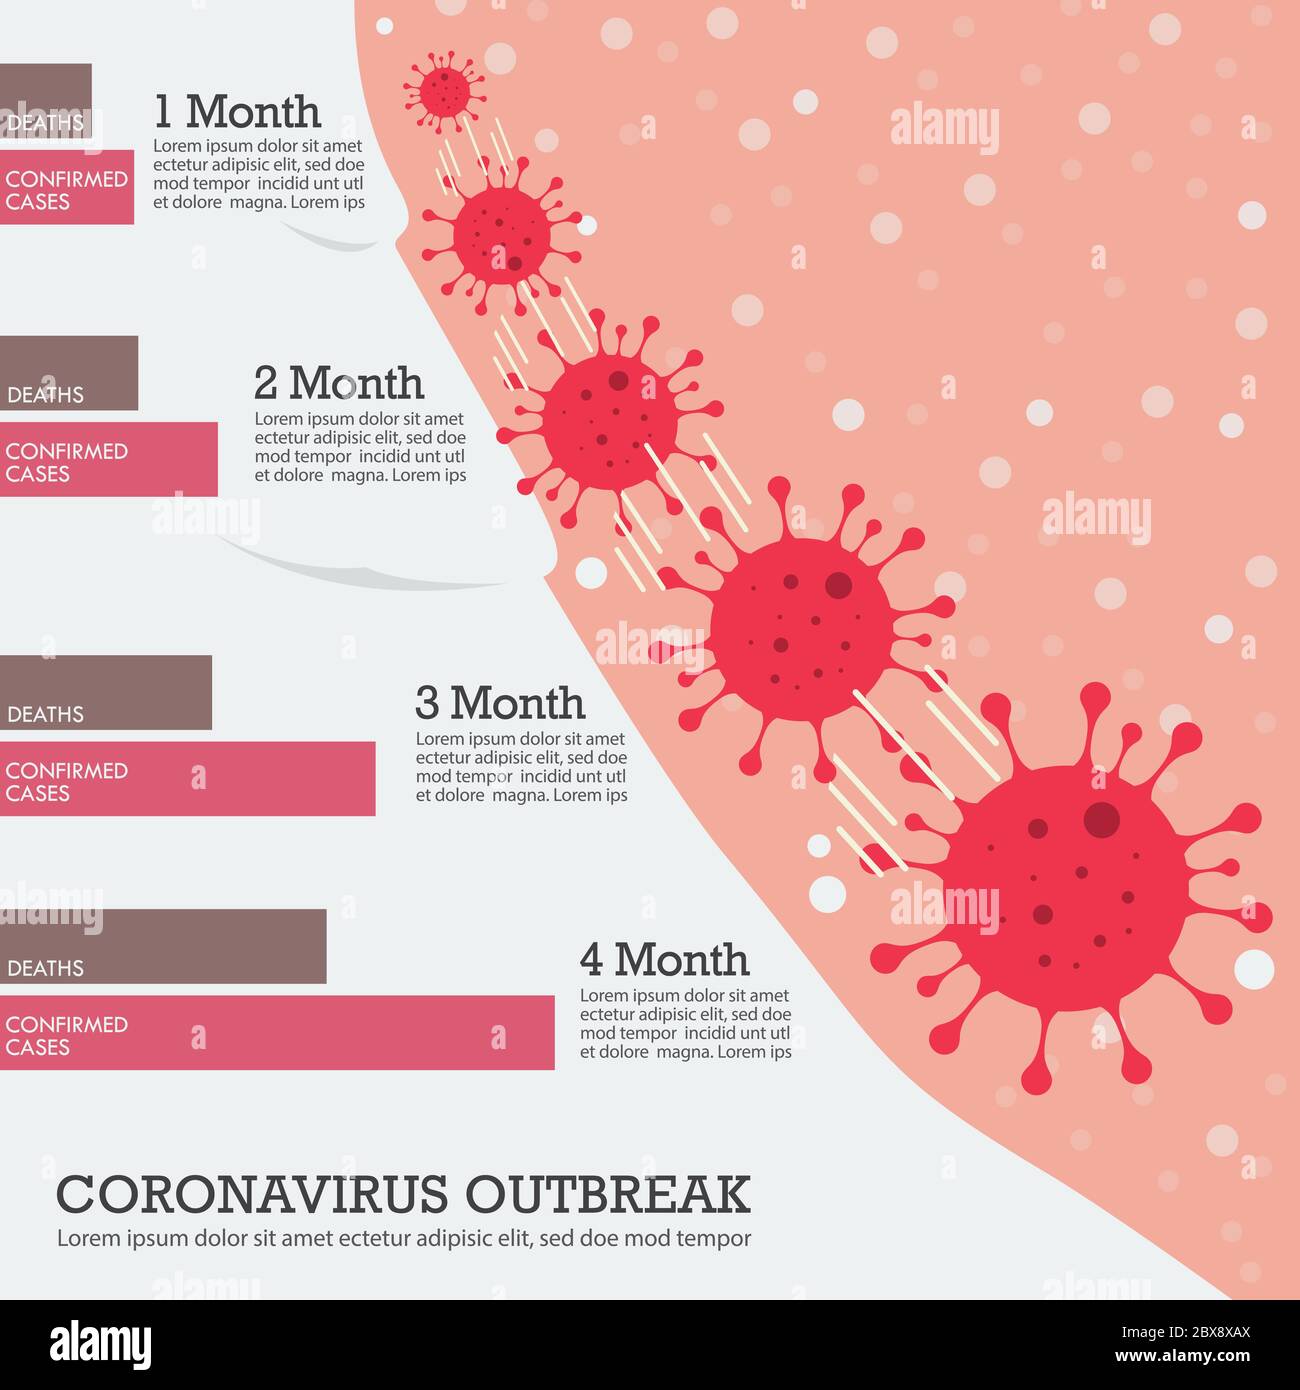 Infographie sur l'épidémie virale de Corona. Concept de pandémie du coronavirus Covid-19. Illustration vectorielle Illustration de Vecteur